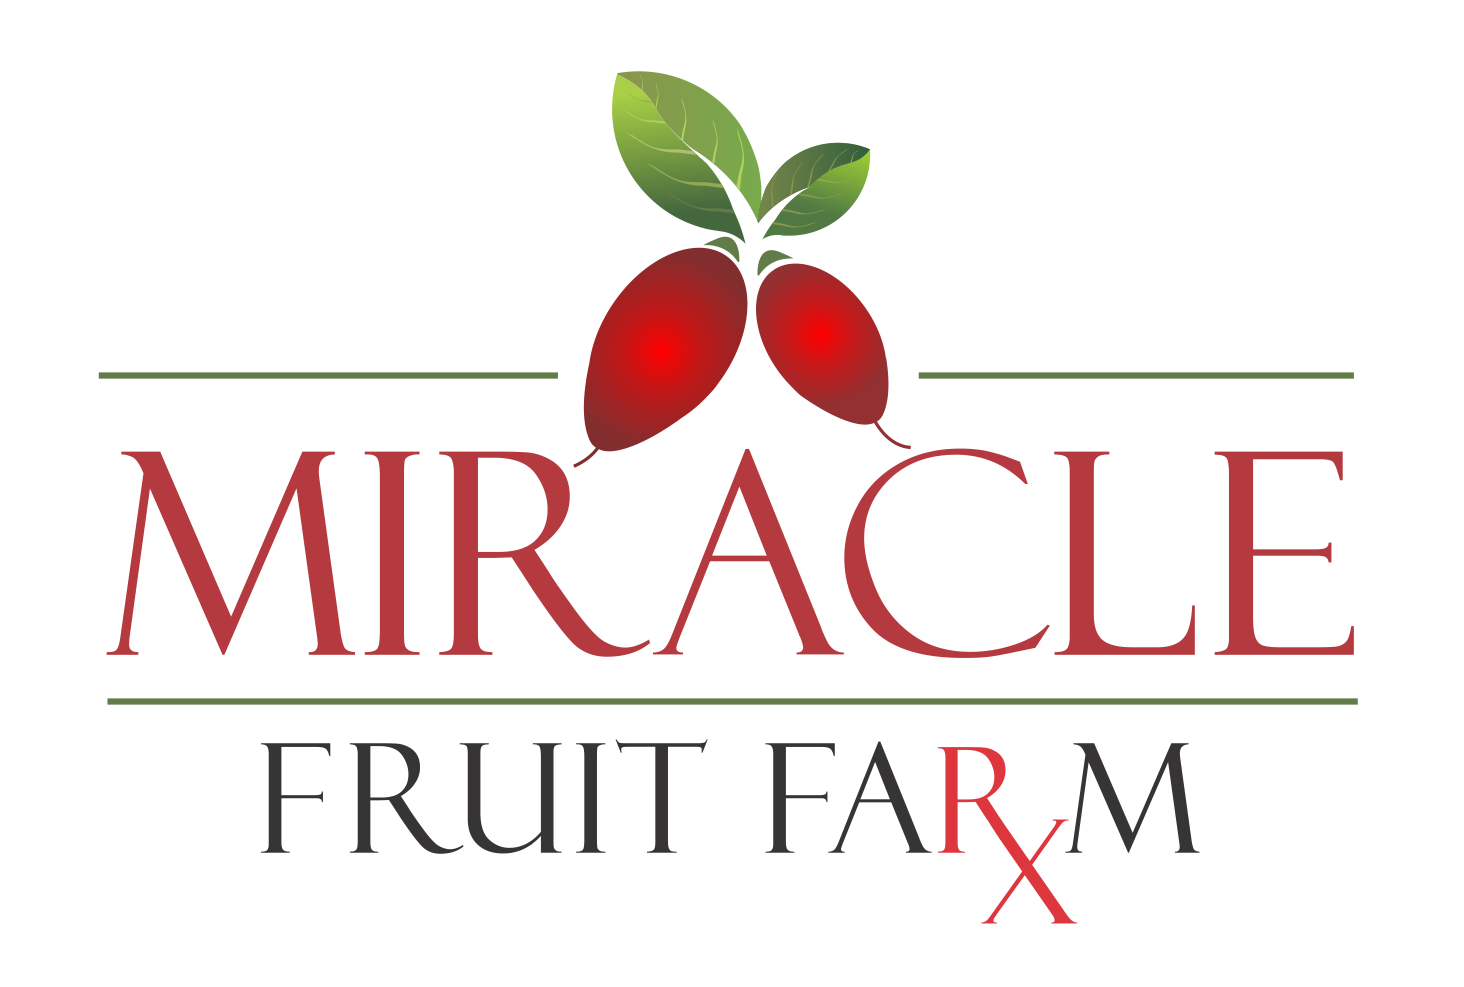 Company logo of Miracle Fruit Farm